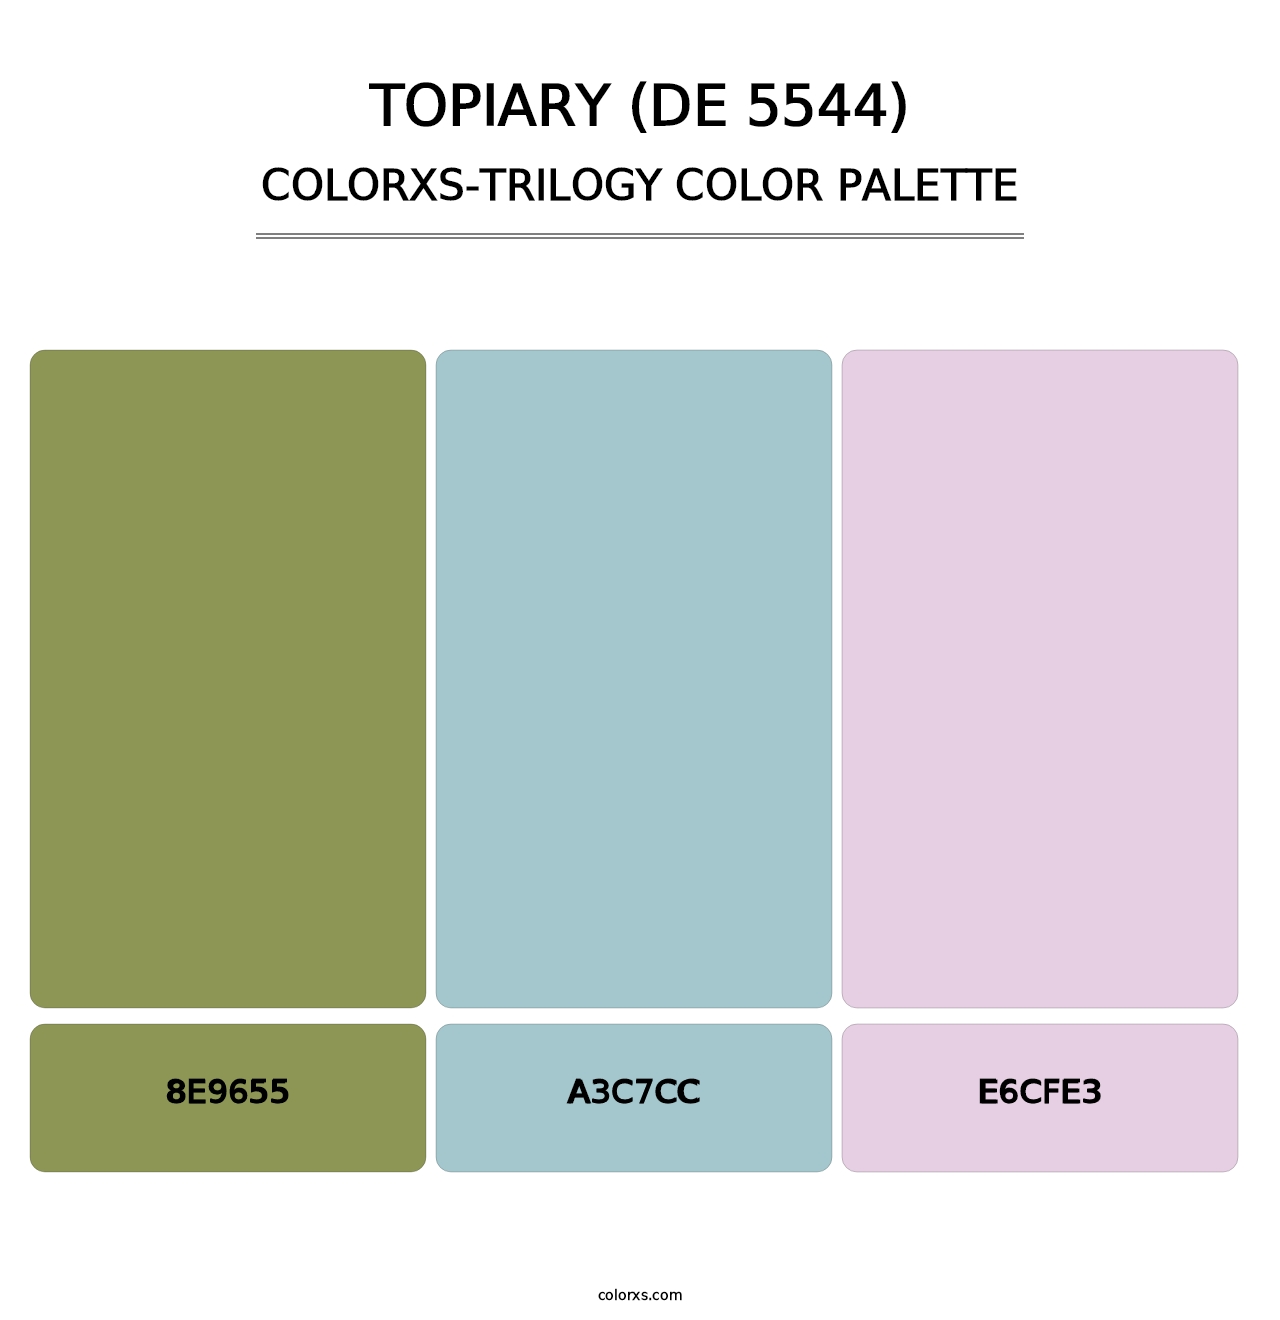 Topiary (DE 5544) - Colorxs Trilogy Palette